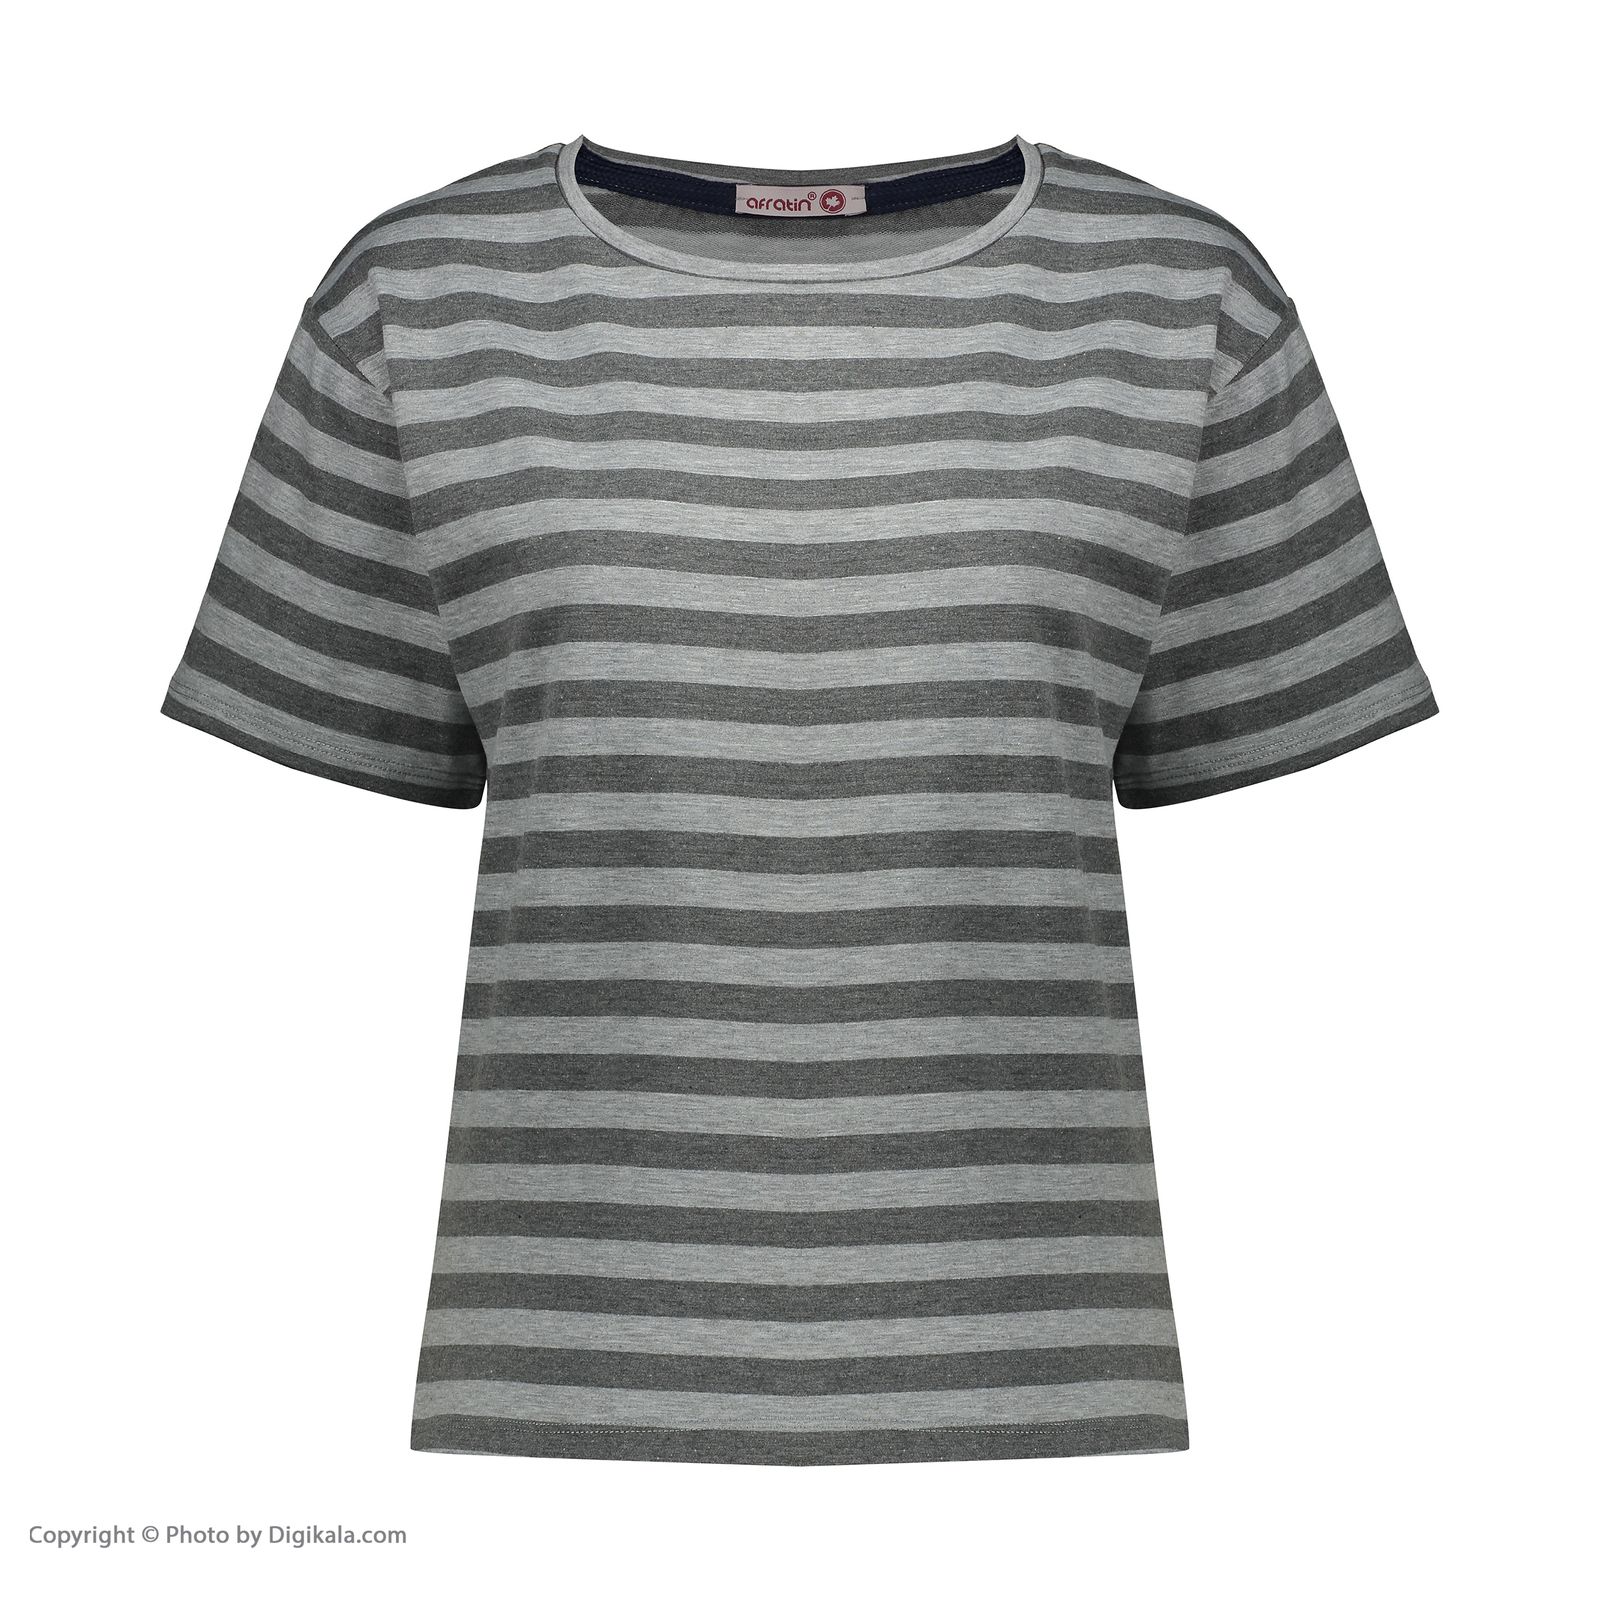 تی شرت آستین کوتاه زنانه افراتین مدل پاریس کد 2585 رنگ طوسی تیره -  - 2